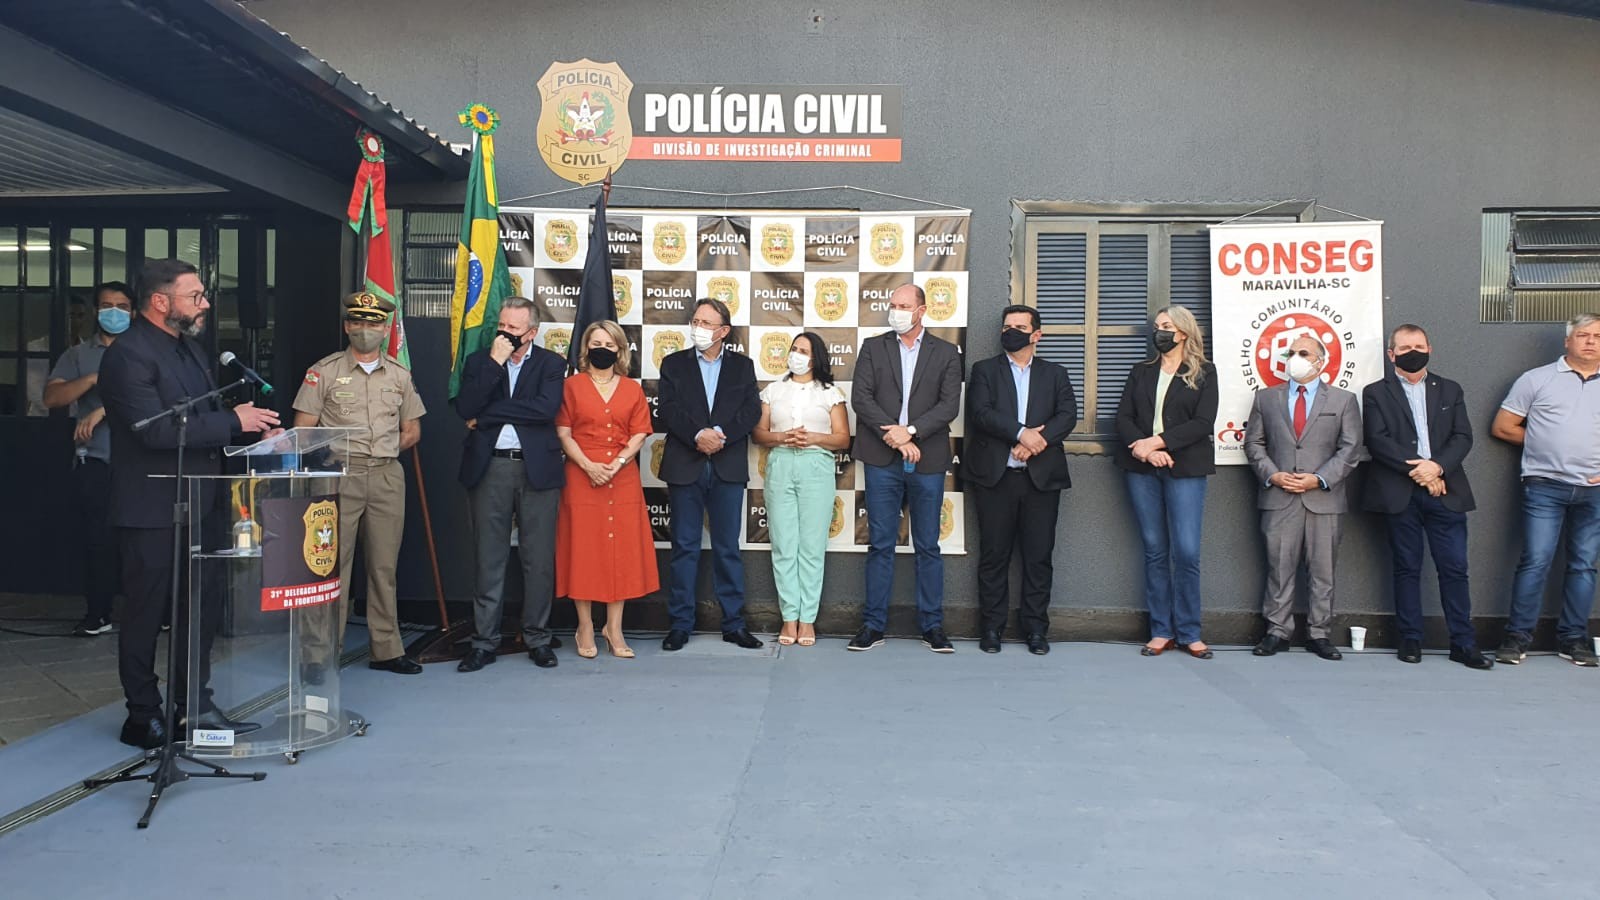  Inaugurada a 31ª Delegacia Regional de Polícia de Maravilha